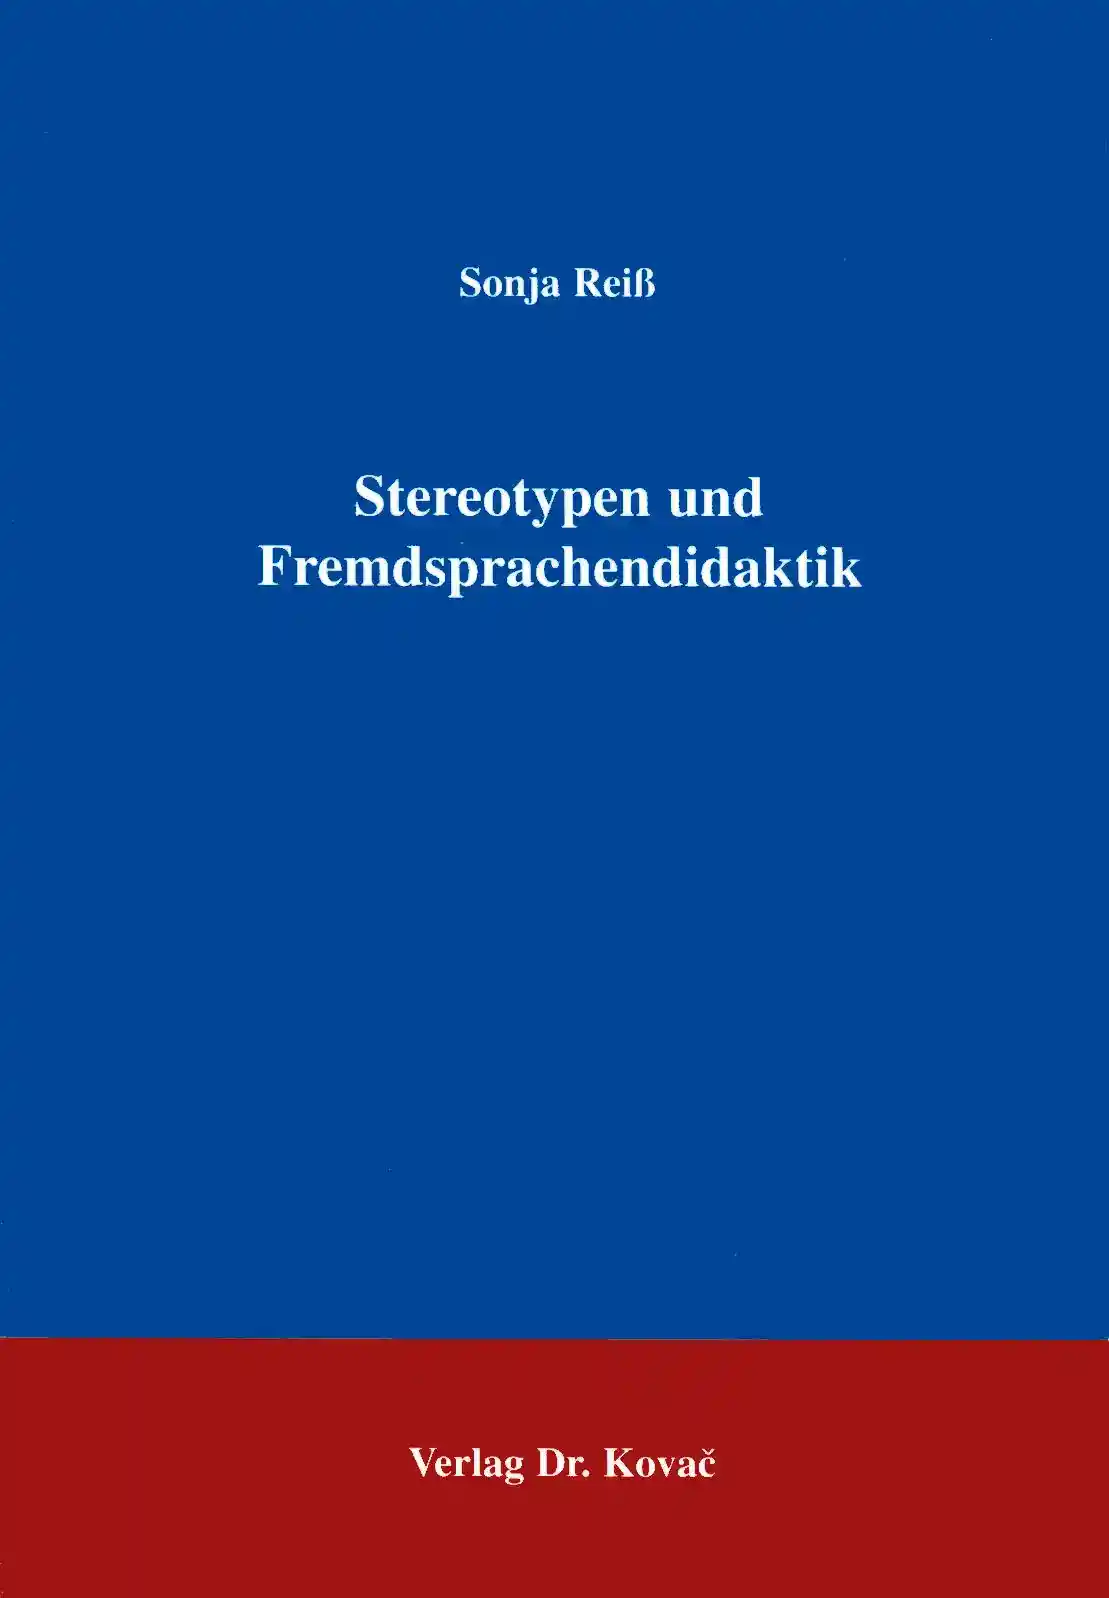 Stereotypen und Fremdsprachendidaktik (Forschungsarbeit)